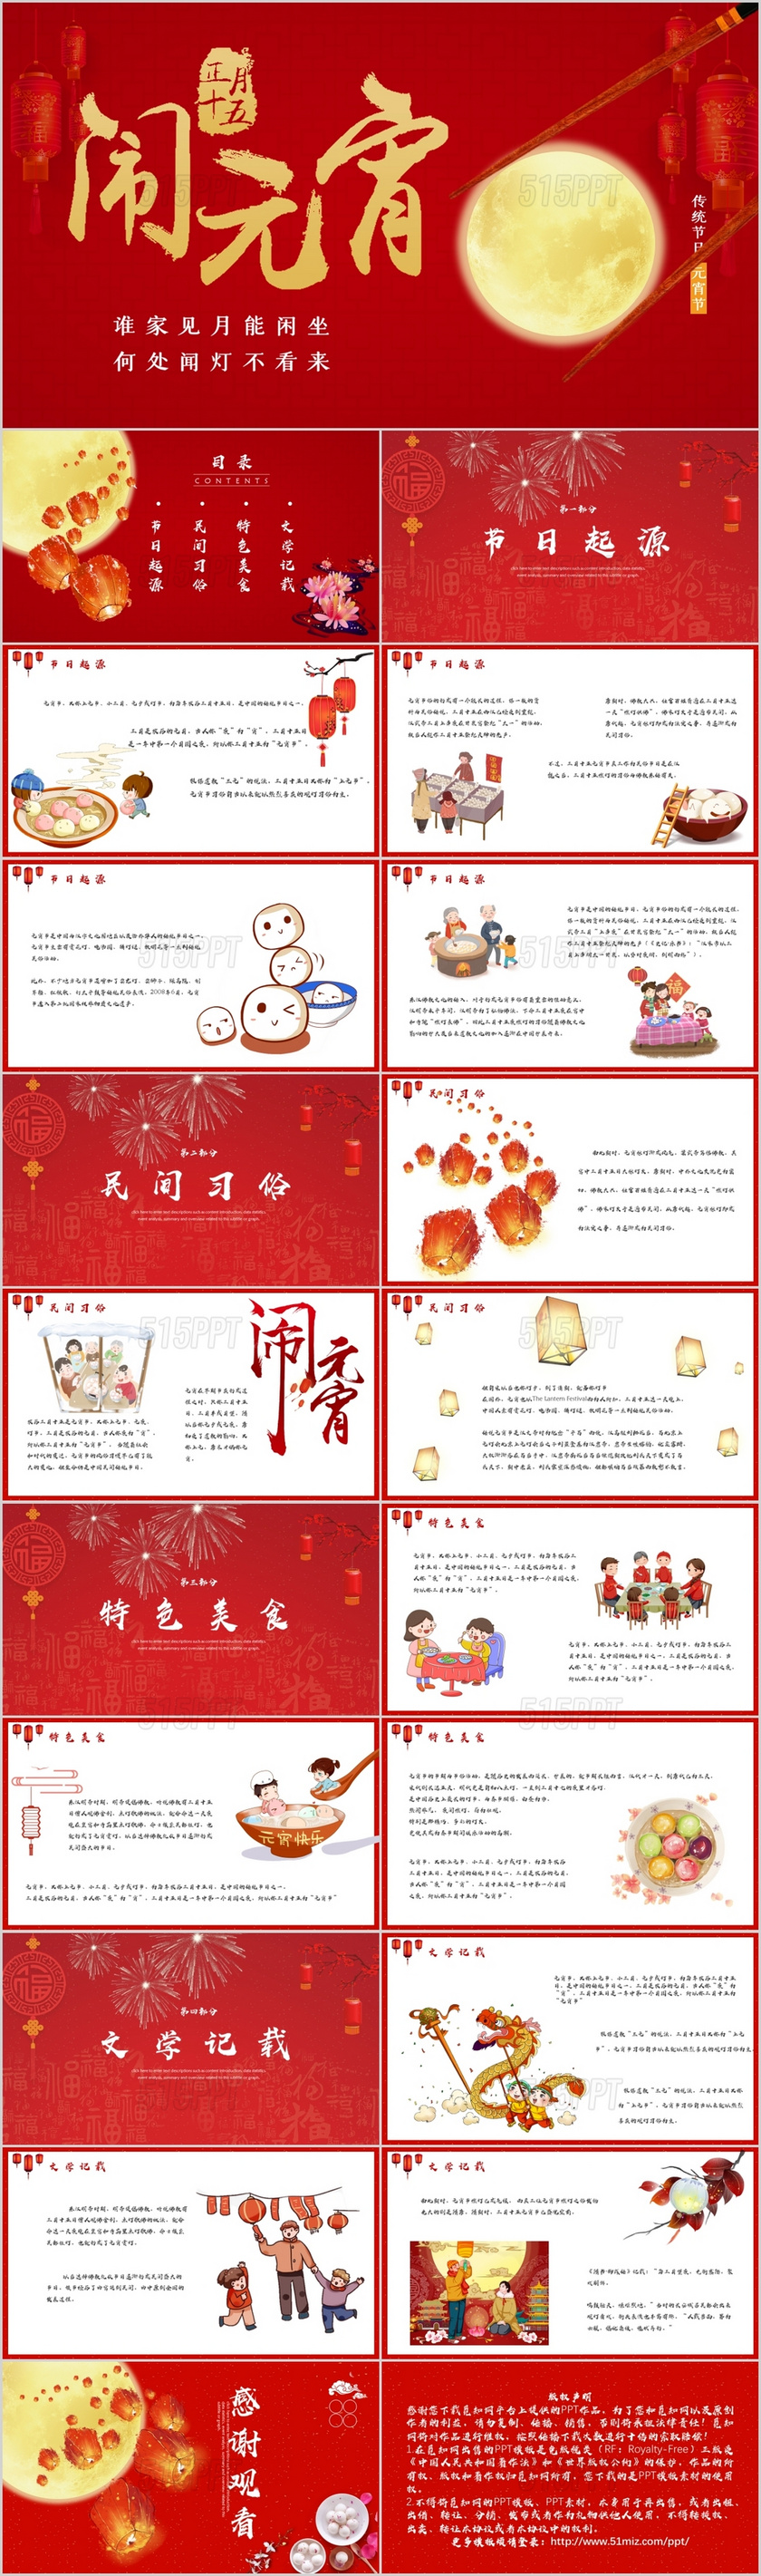 中国风红色传统节日元宵节介绍PPT模板2020元宵节